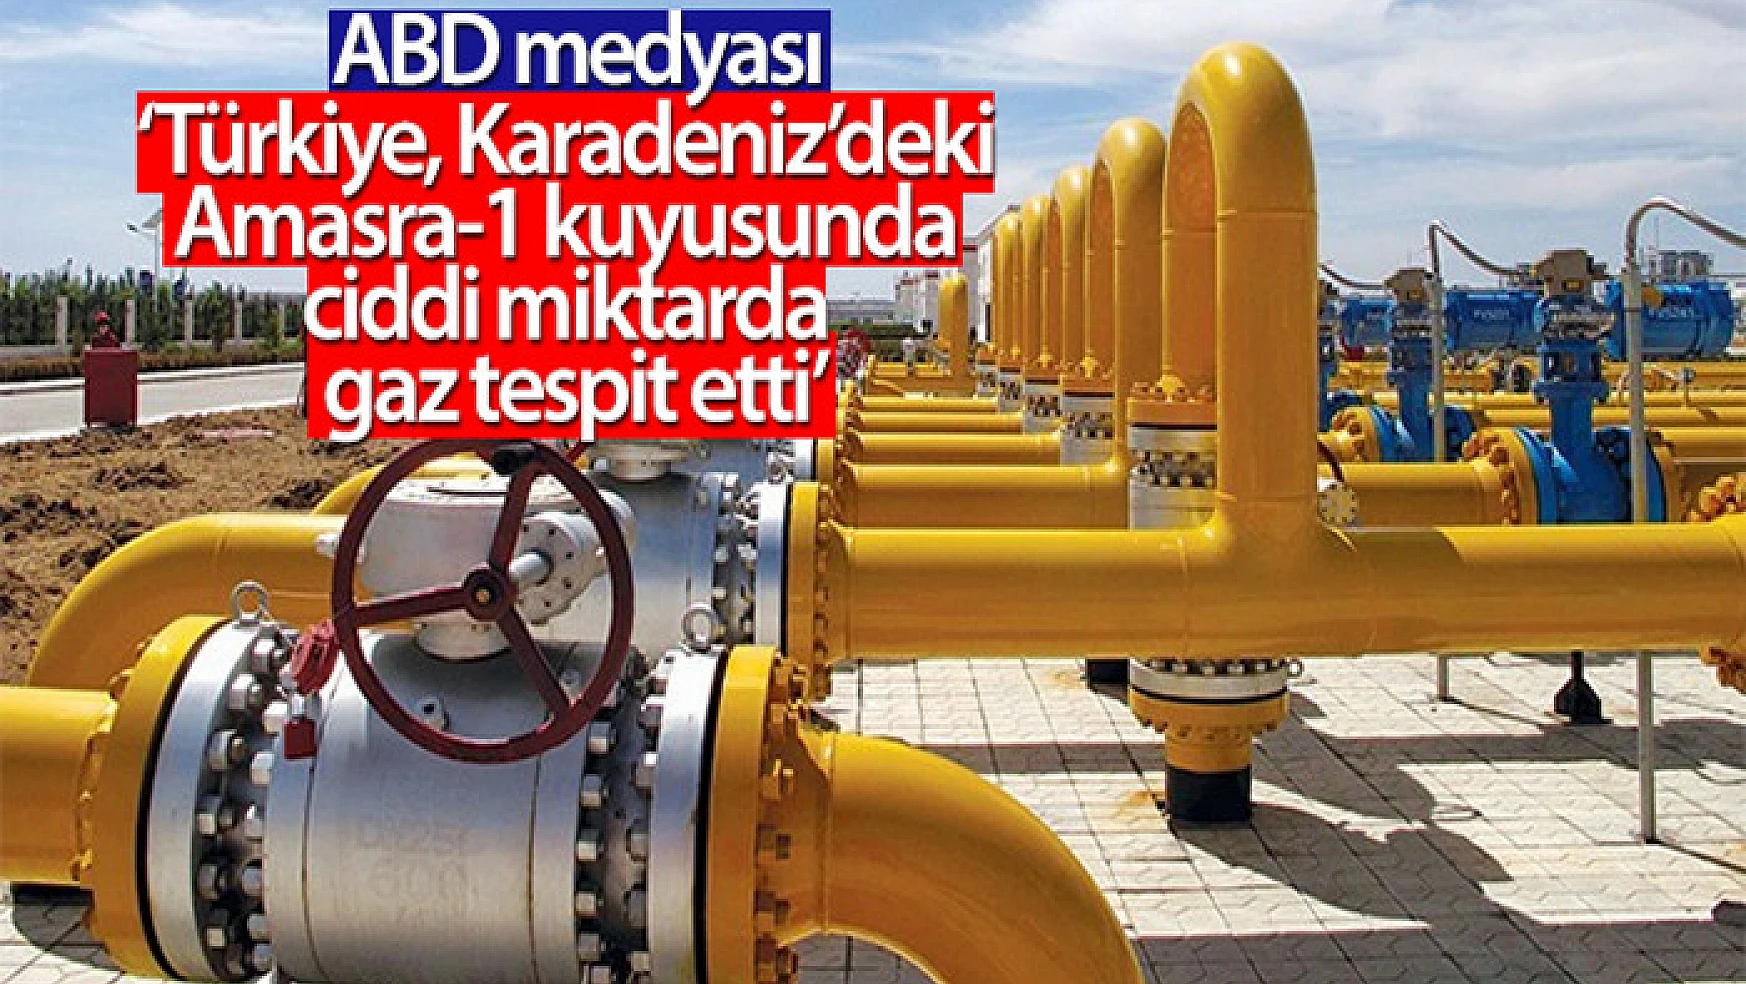 ABD medyası: 'Türkiye, Karadeniz'deki Amasra-1 kuyusunda ciddi miktarda gaz tespit etti'